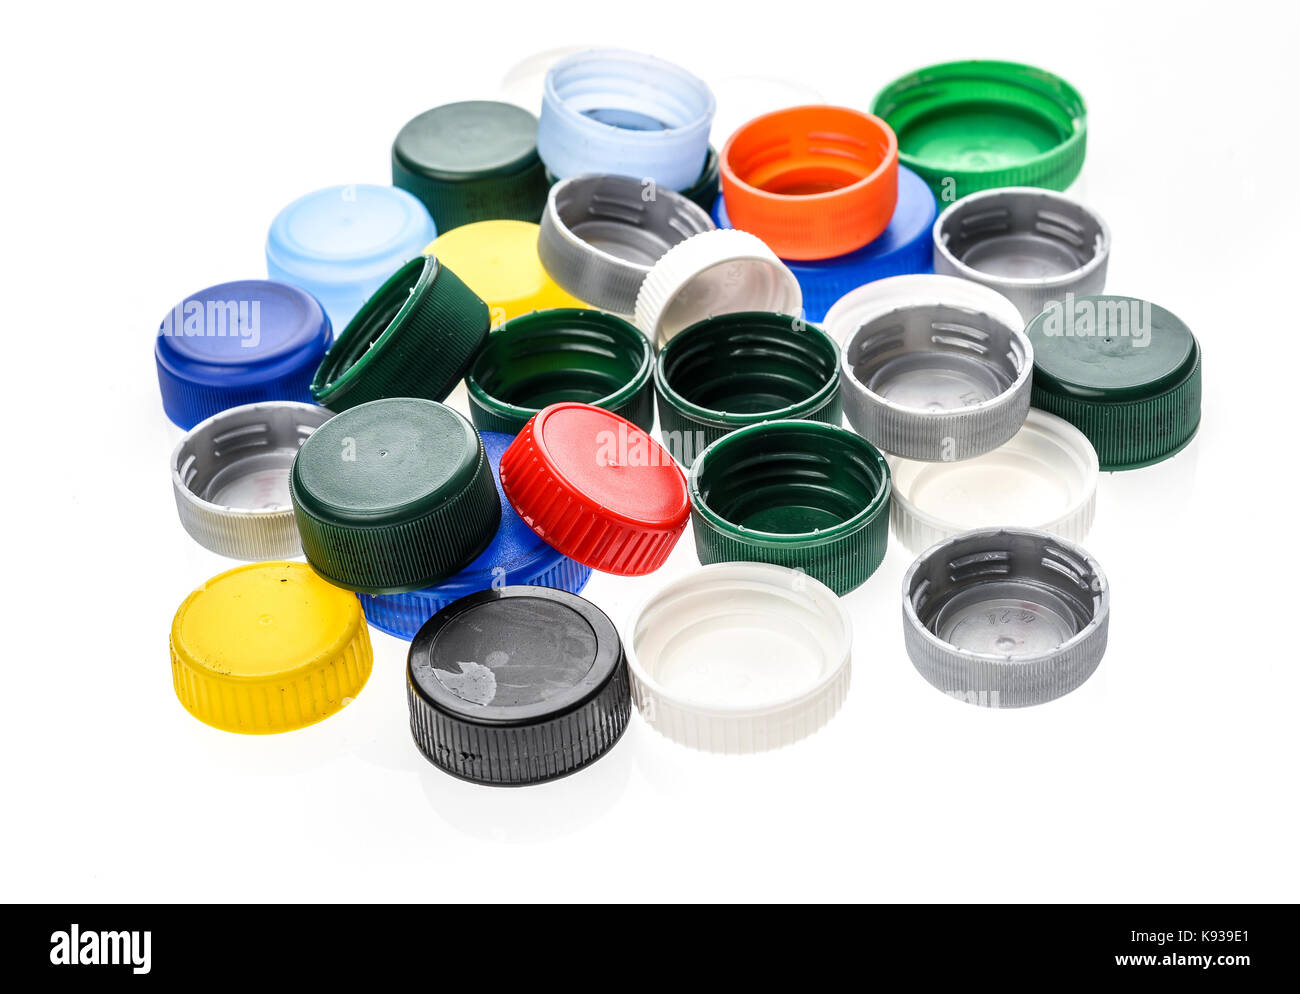 Verschlusskappen aus Kunststoff in verschiedenen Farben. Ein Haufen plastik  Flasche deckt. Auf weissem Hintergrund Stockfotografie - Alamy